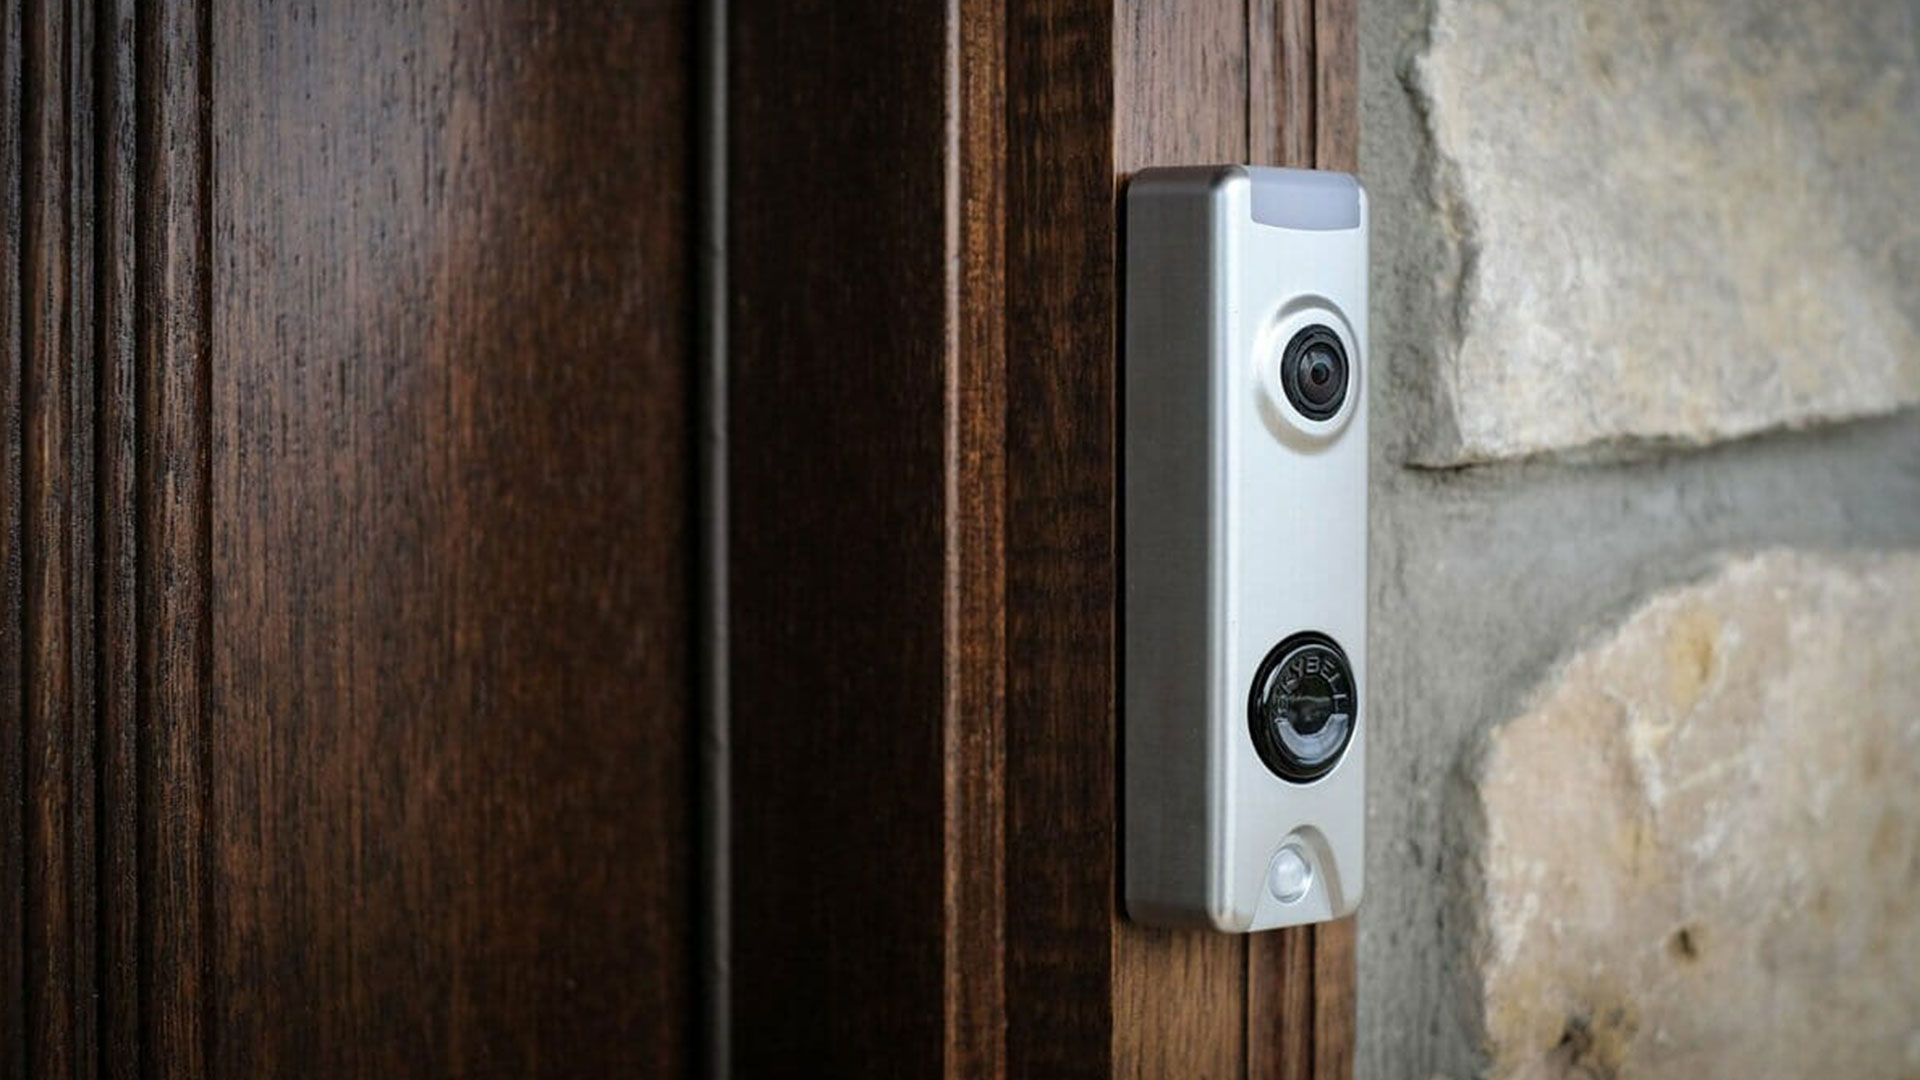 Know the Hidden Risks of Budget Video Doorbells